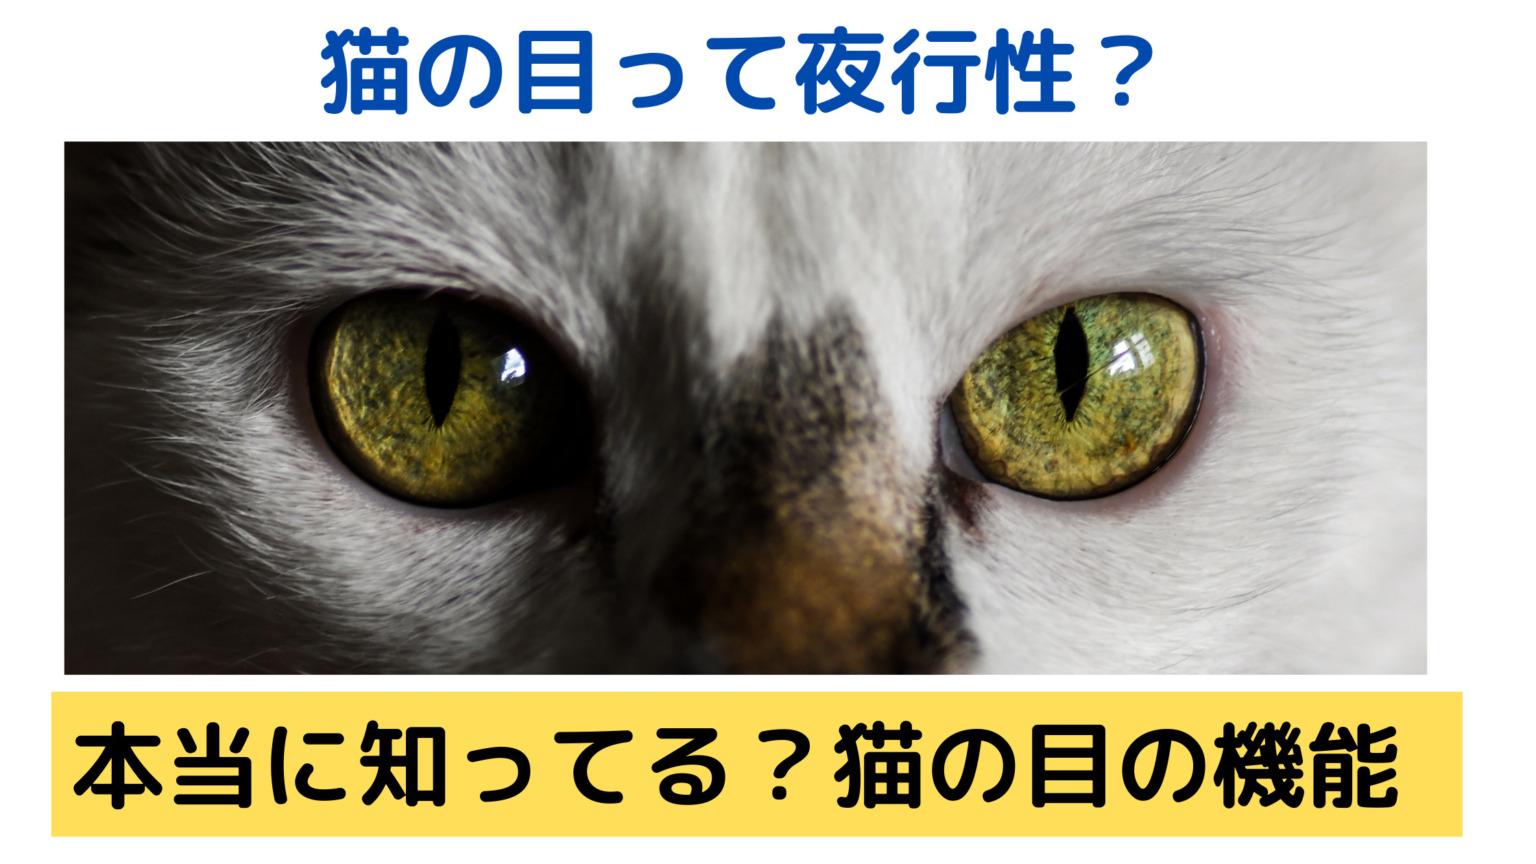 猫の目の不思議！なぜ光る？ヒトとは違う猫の目の構造